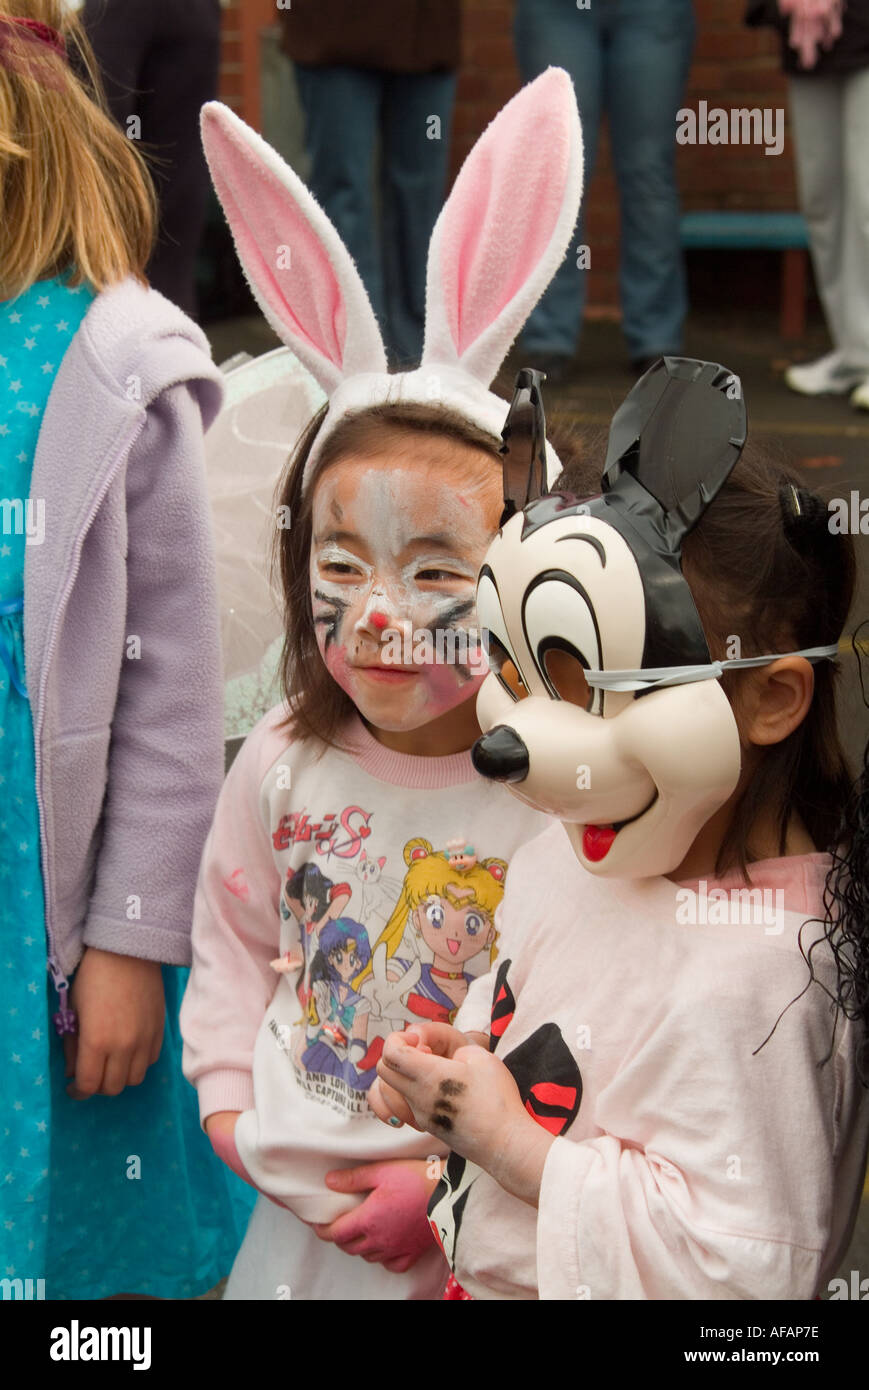 La scuola primaria chidren in costume per un libro parade dove i bambini vestirsi come i loro personaggi preferiti da libri Foto Stock